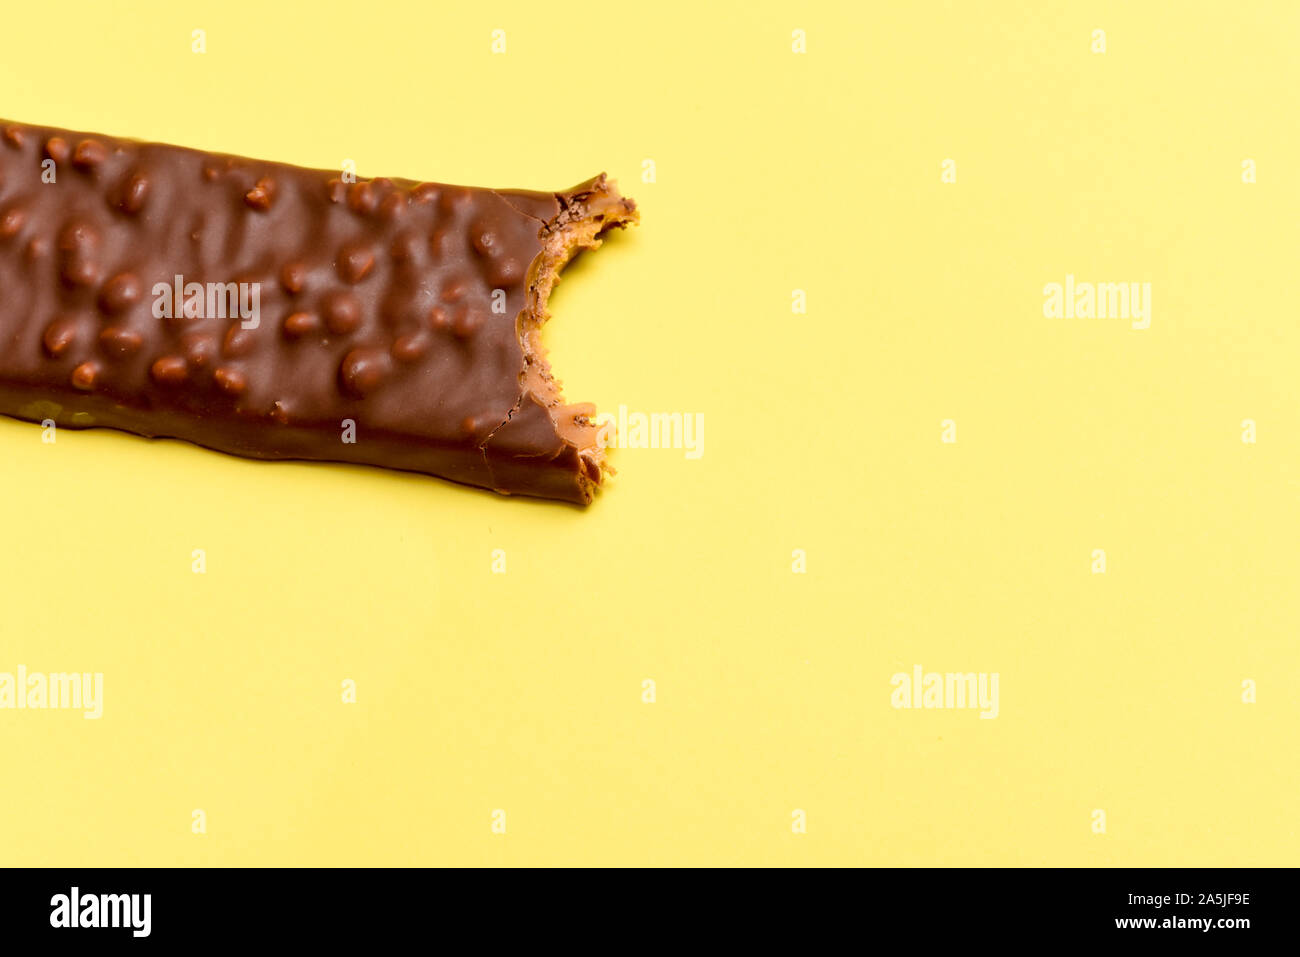 Gustosa barretta al cioccolato con un morso preso isolato ad alto contenuto calorico snack alimentare Foto Stock